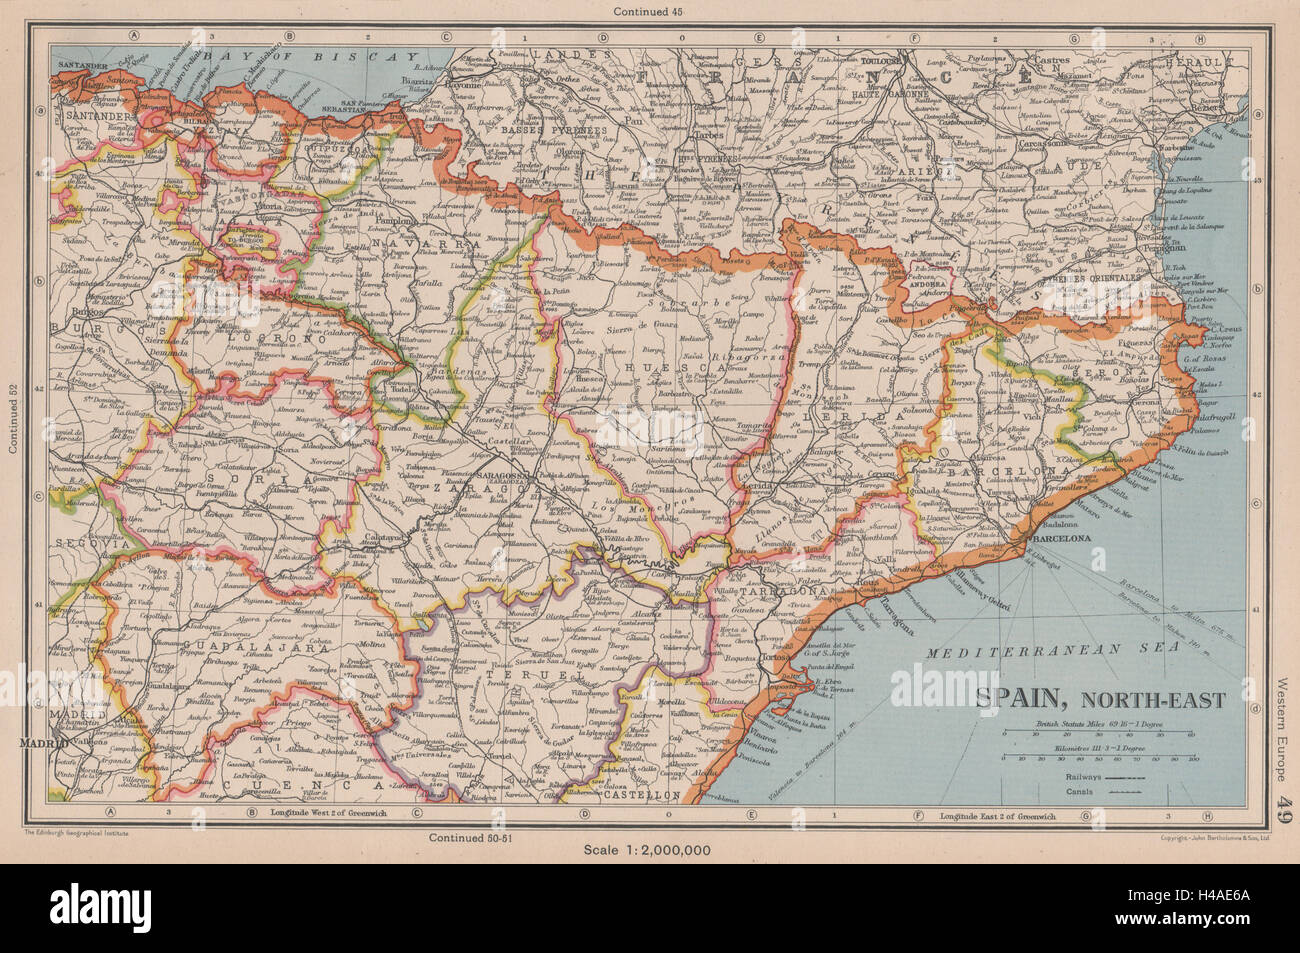 L'ESPAGNE, AU NORD-EST. La Catalogne (Catalunya) Aragon Navarre Pays Basque 1944 map Banque D'Images